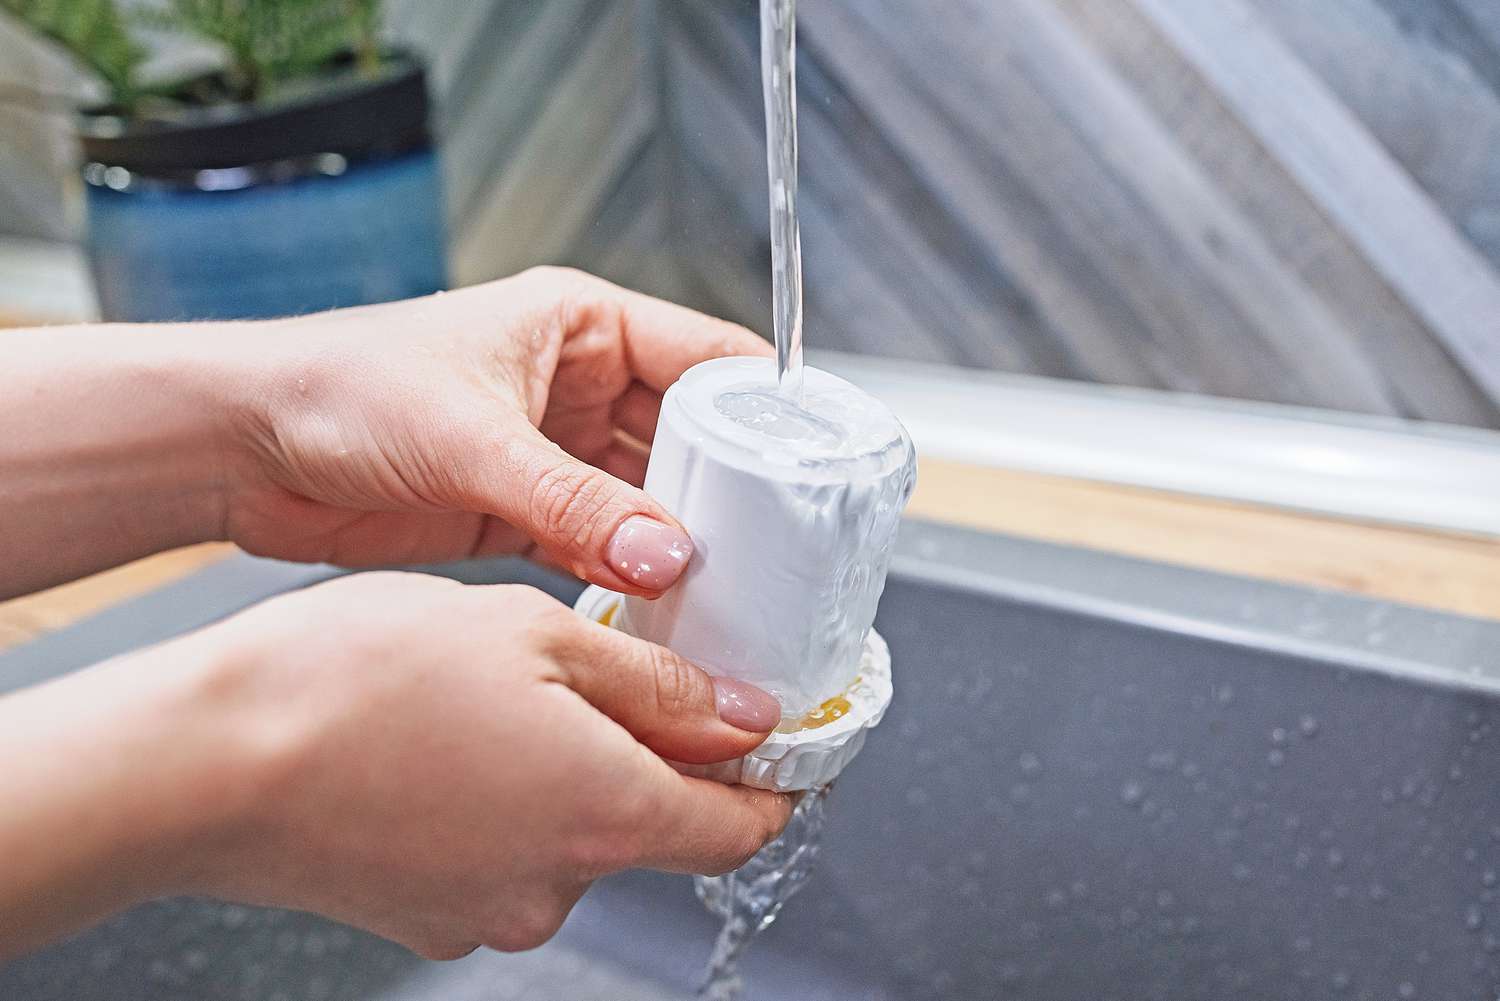 Filtro humidificador lavado a mano bajo el chorro de agua del fregadero